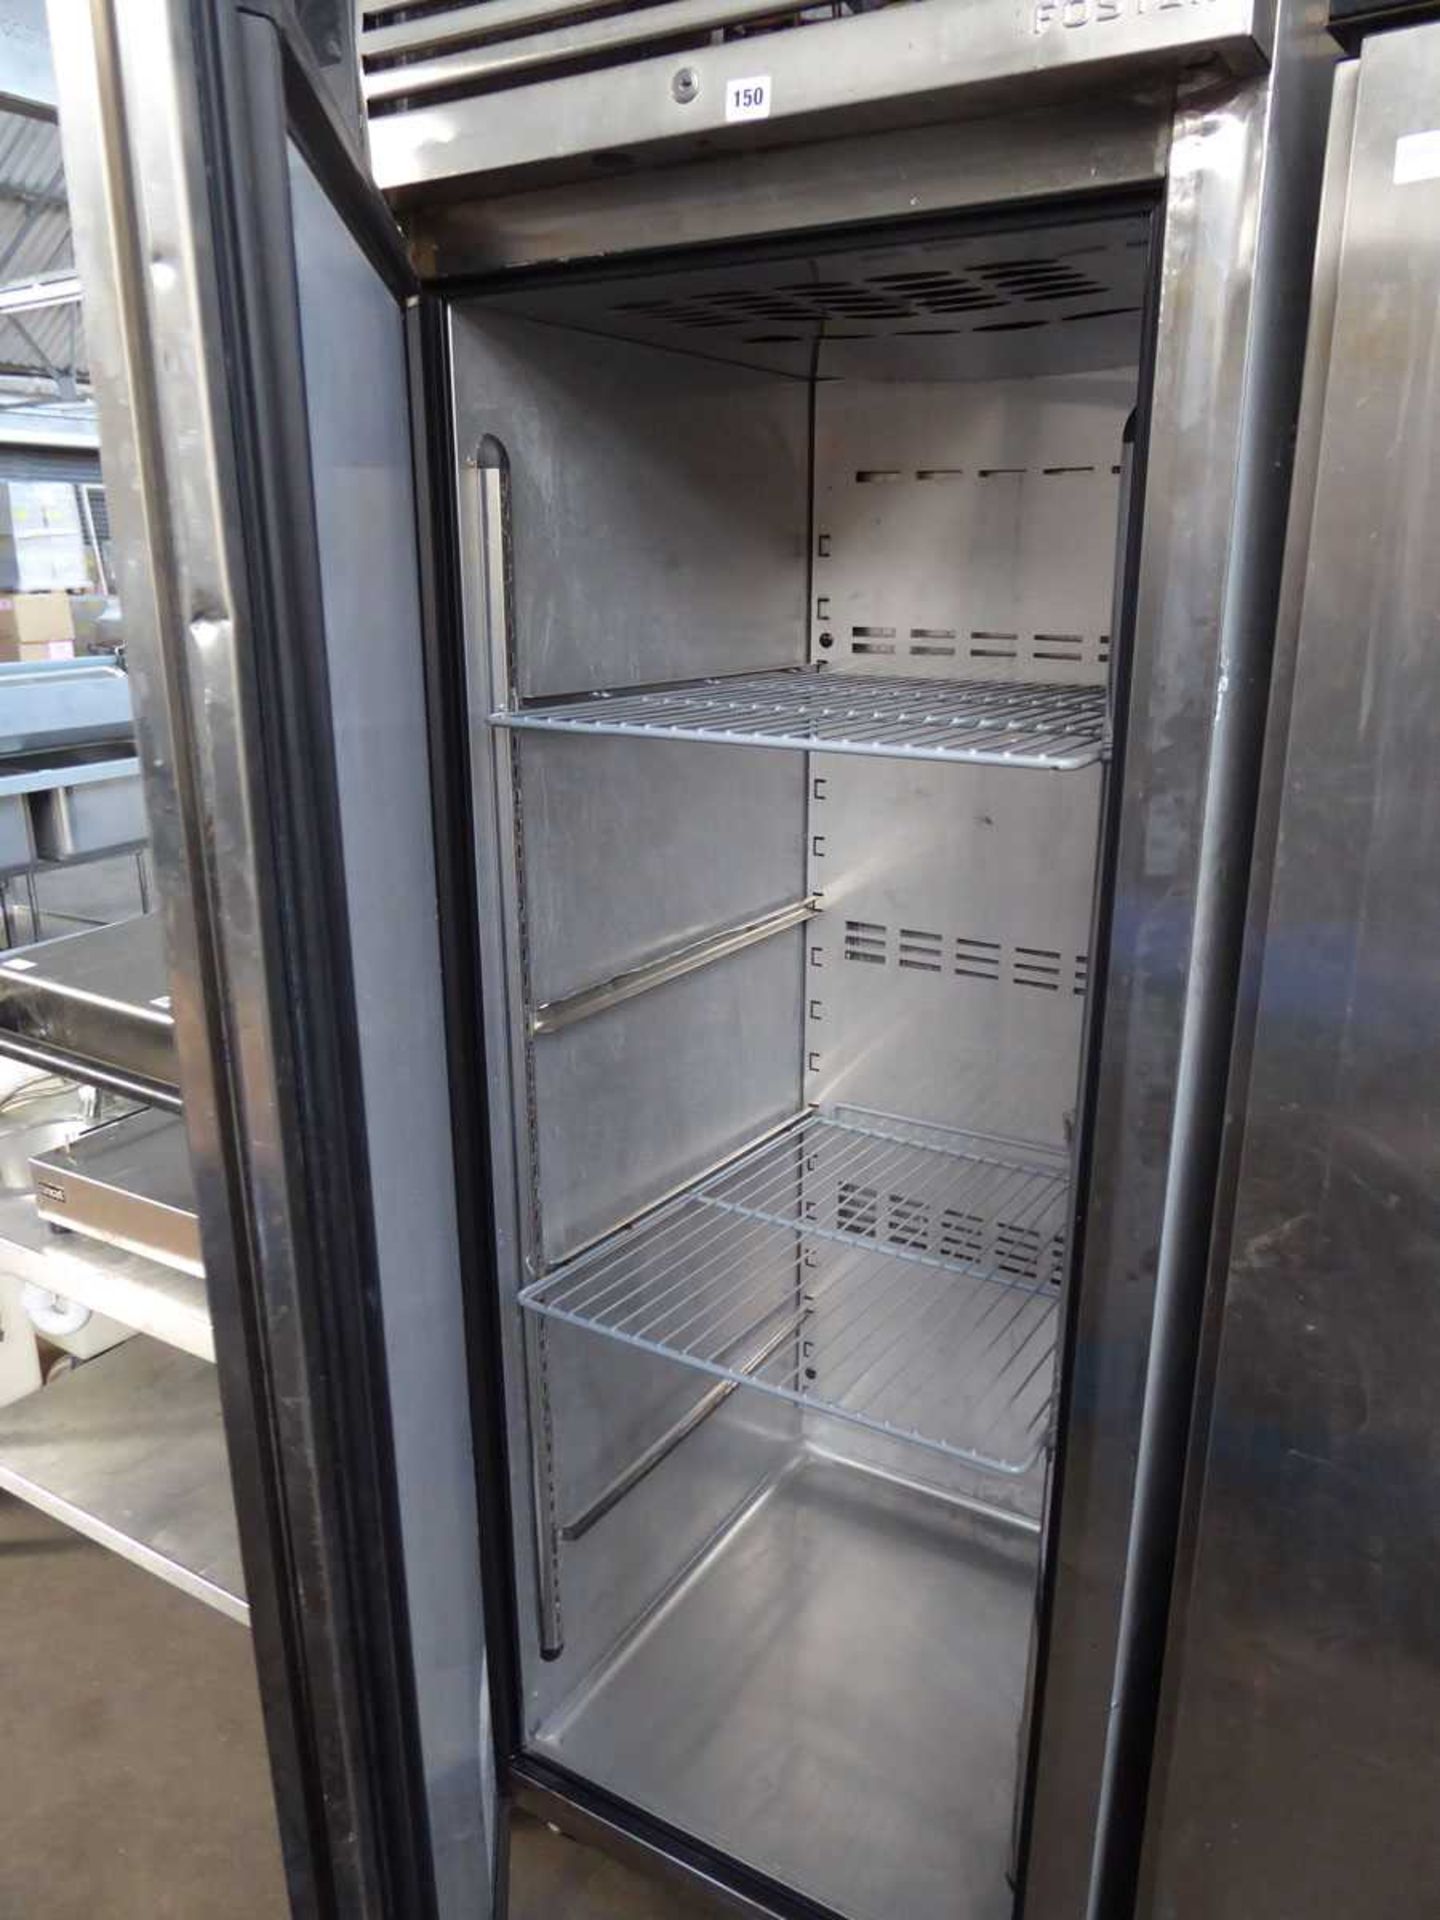 70cm model EP700L single door freezer (No lead) - Image 2 of 4